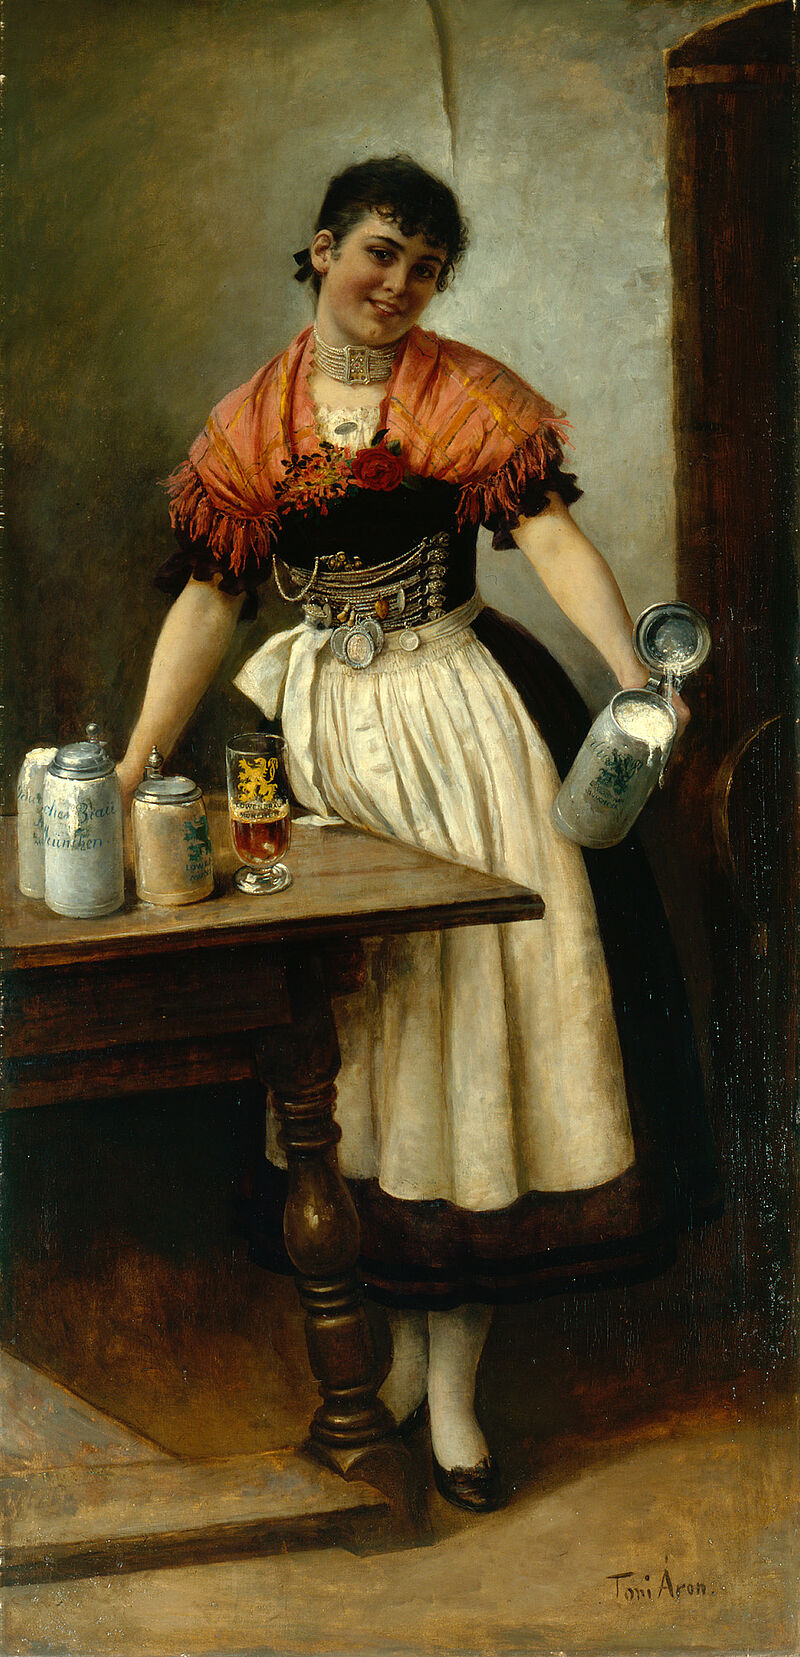 Toni Aron, Kellnerin in alter Münchner Tracht, genannt „Die schöne Coletta“, um 1880